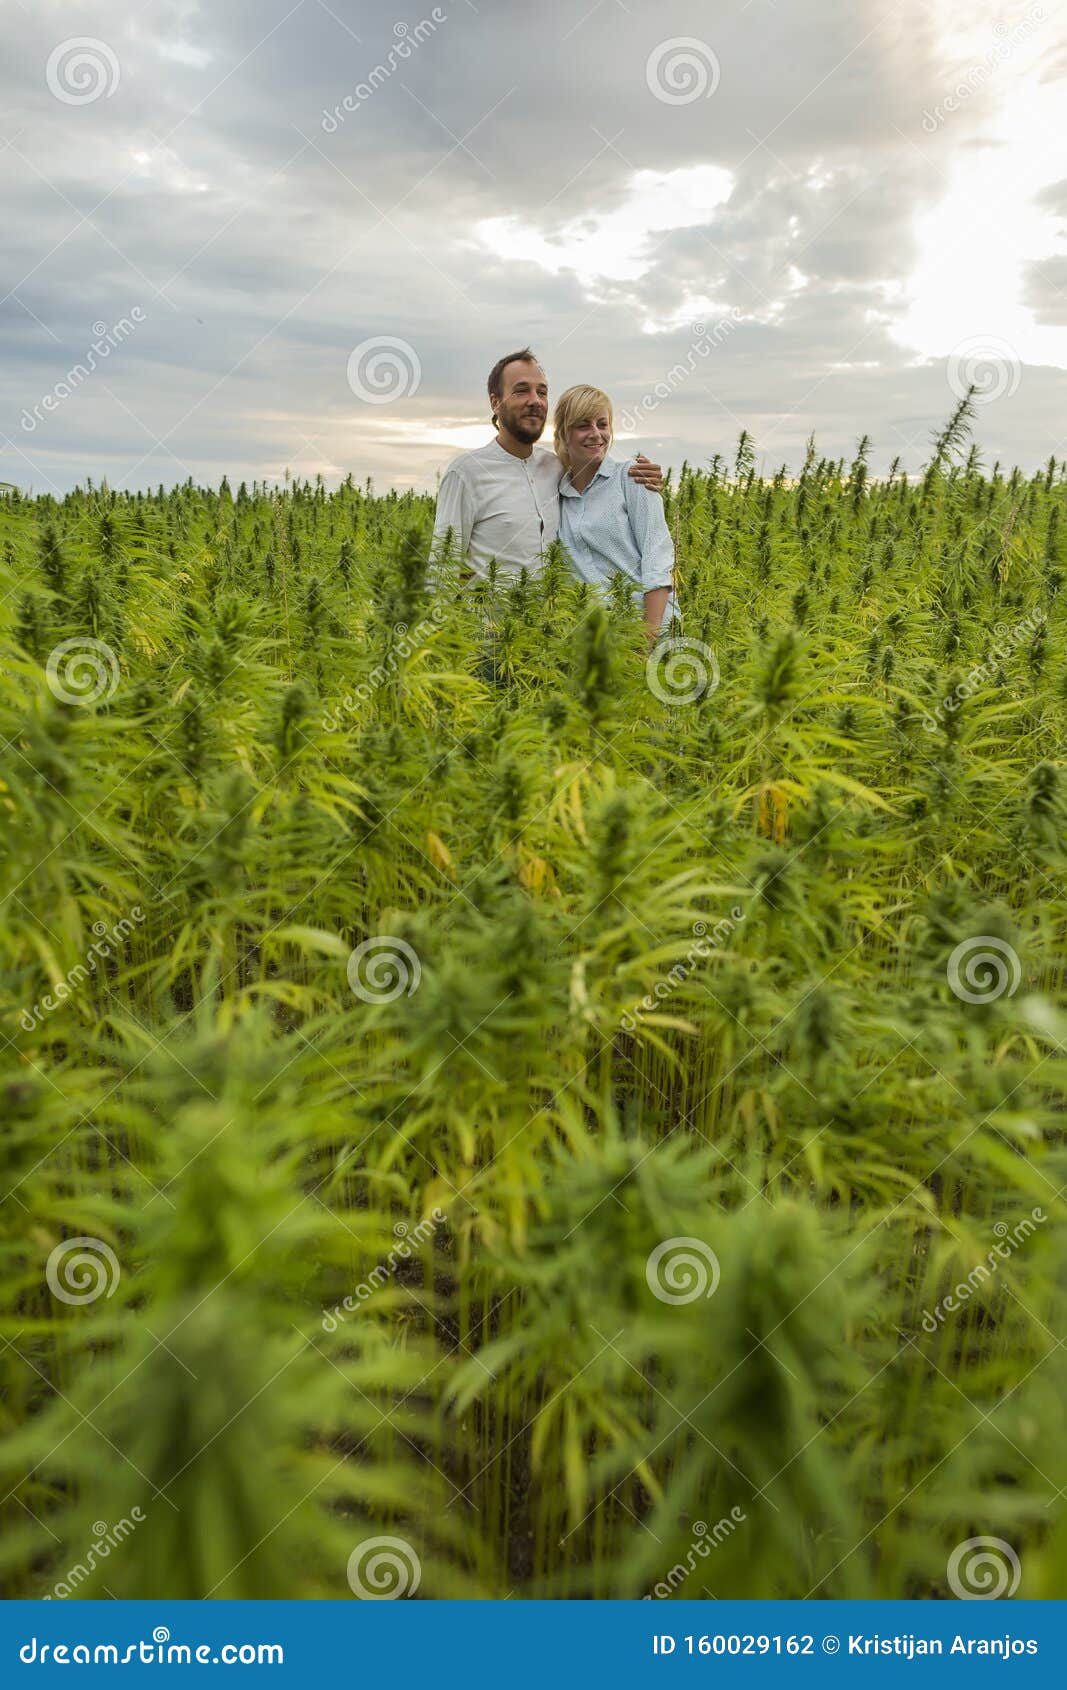 Картинка на поле конопли в сиануквиле марихуана